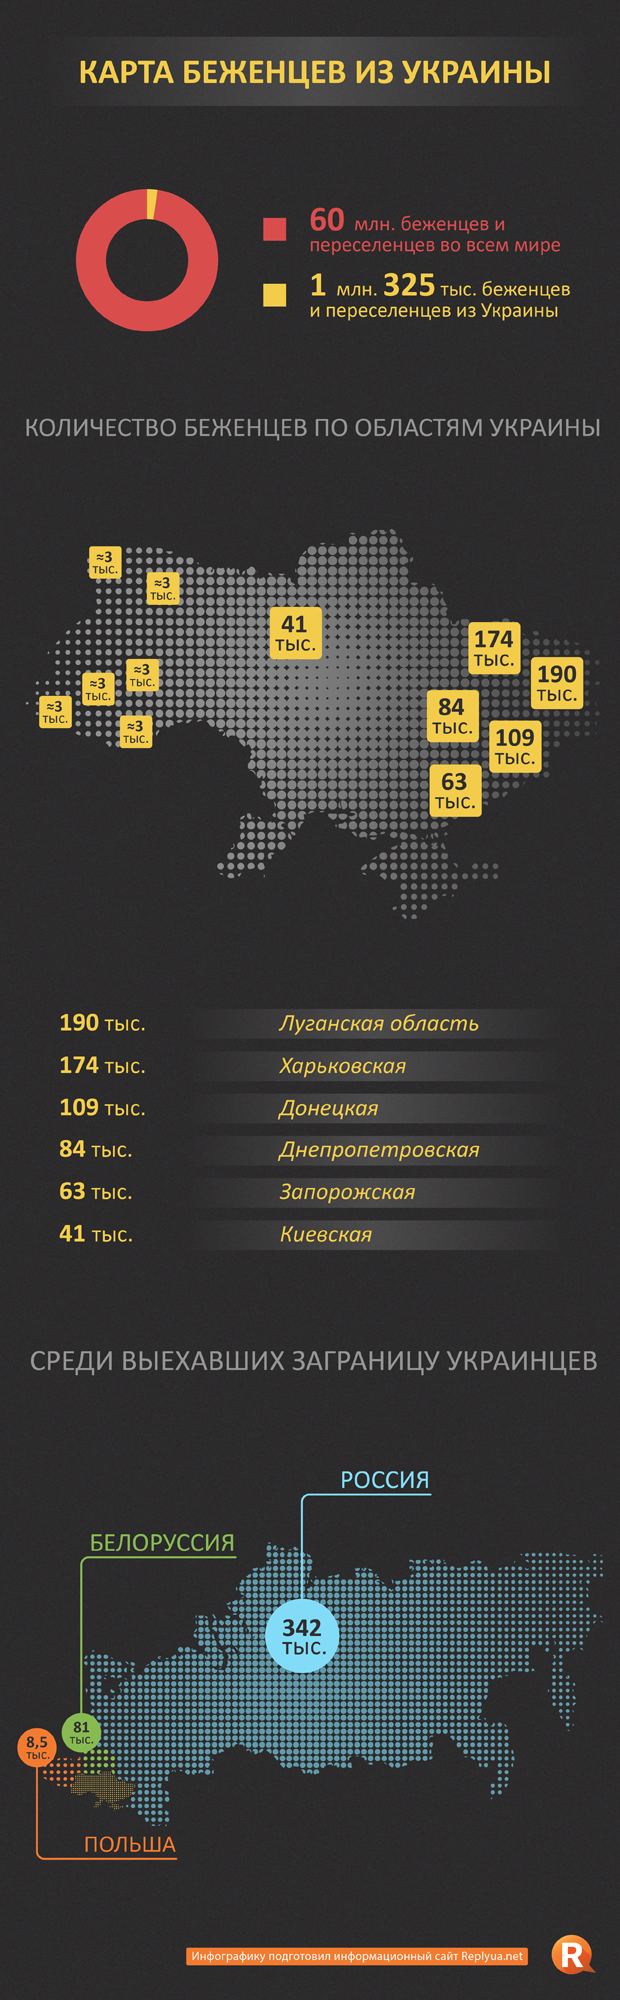 Карта беженцев из Украины - инфографика 